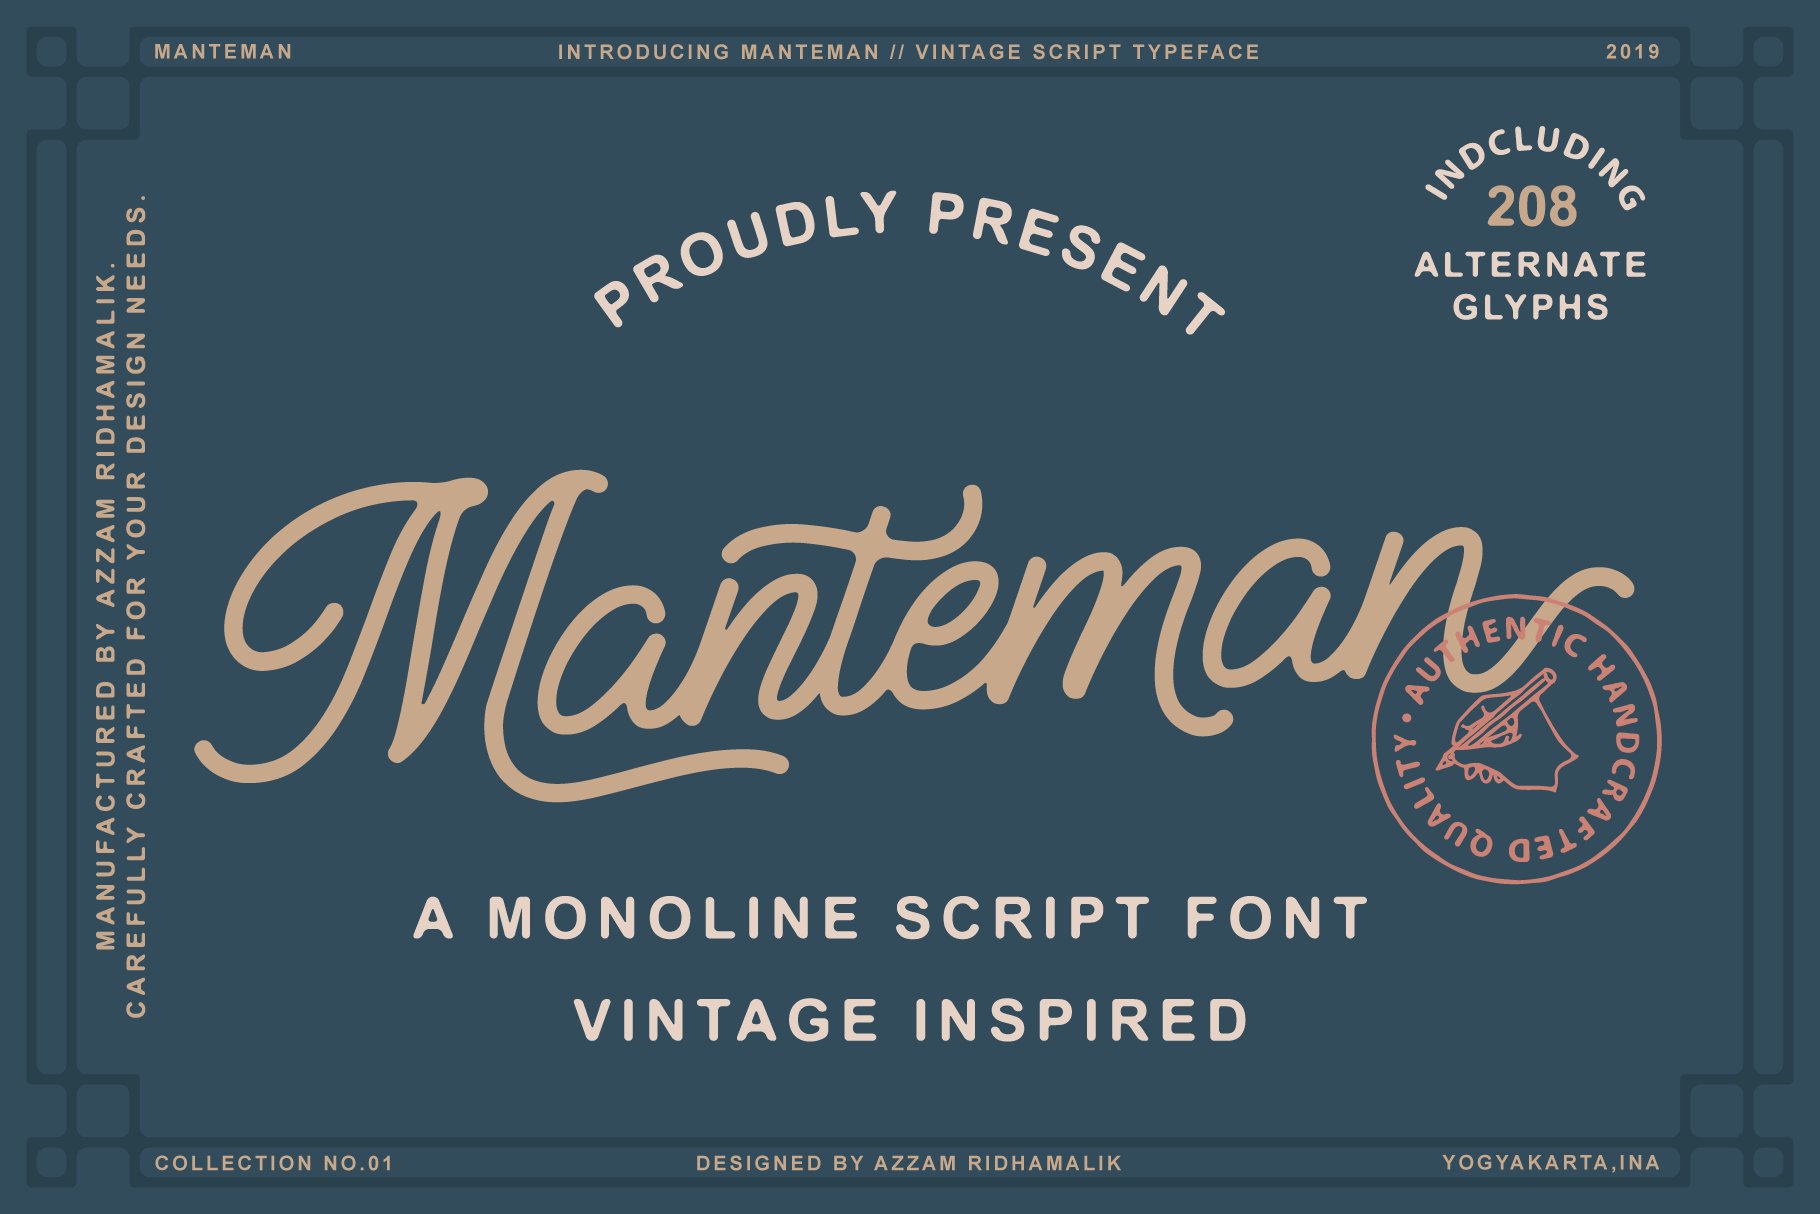 Manteman - Monoline Script Font cover image.